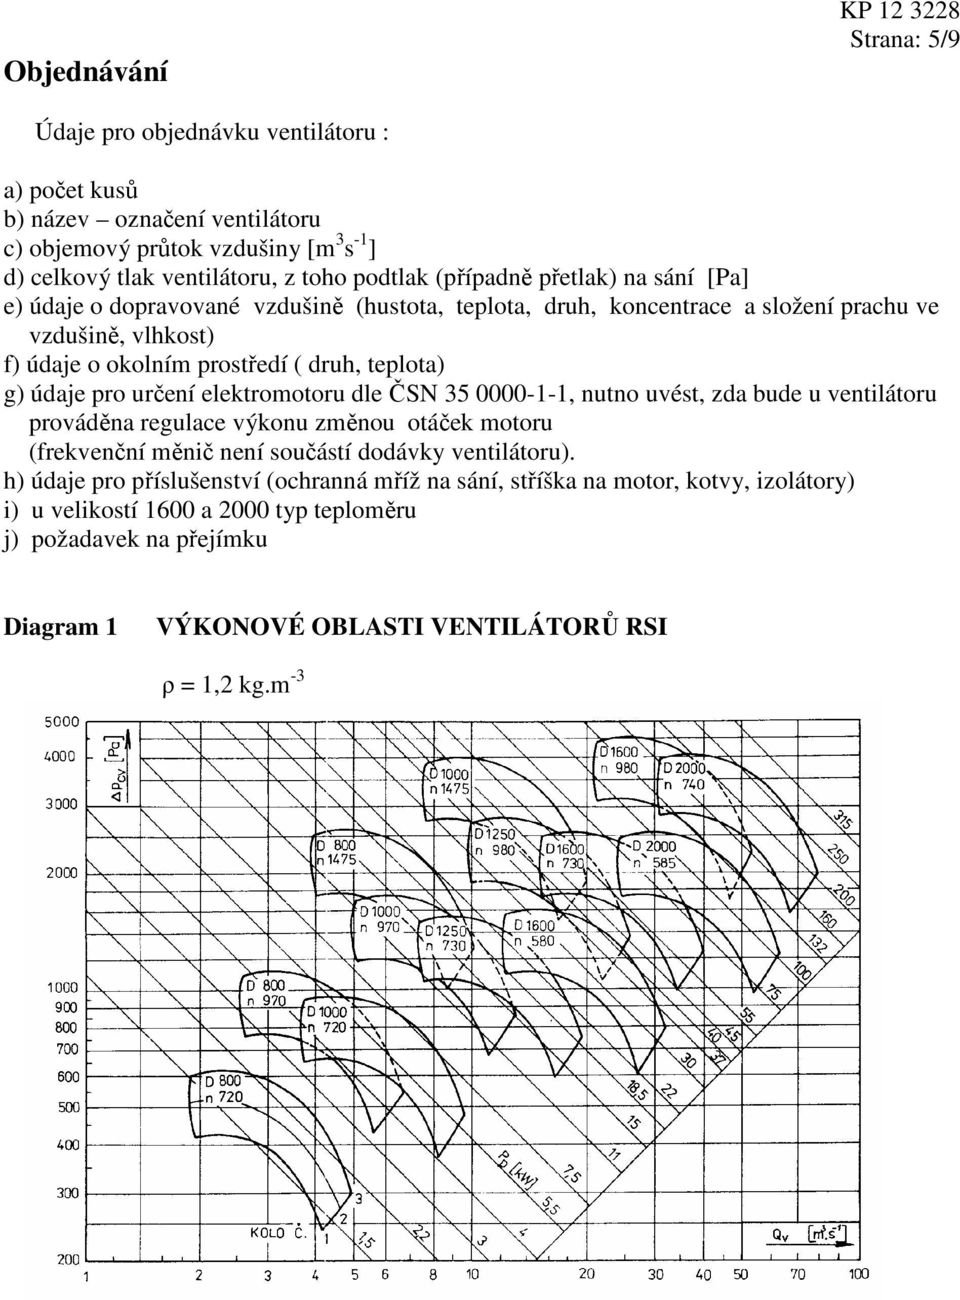 údaje pro určení elektromotoru dle ČSN 35 0000-1-1, nutno uvést, zda bude u ventilátoru prováděna regulace výkonu změnou otáček motoru (frekvenční měnič není součástí dodávky ventilátoru).